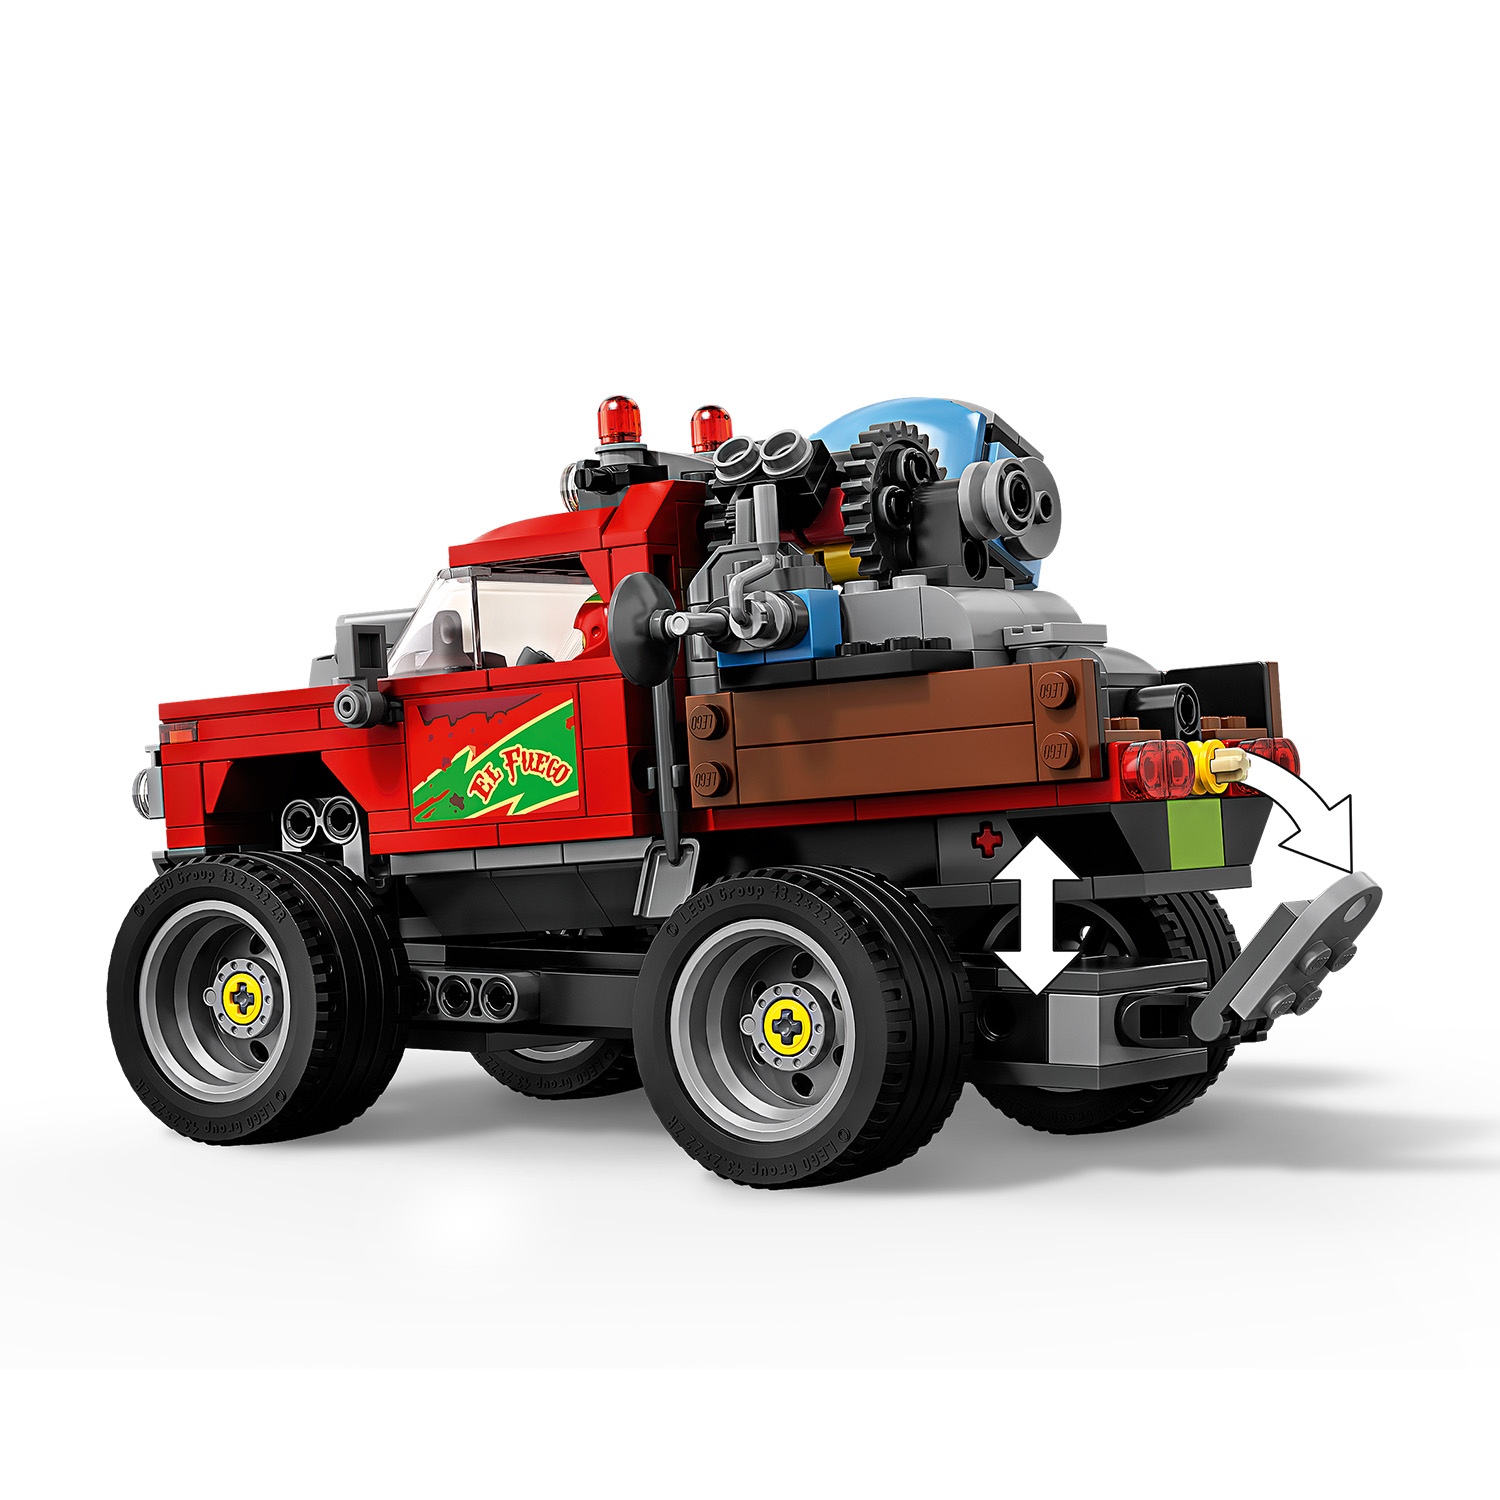 LEGO Hidden Side El Fuegos Stunt-Truck - 70421